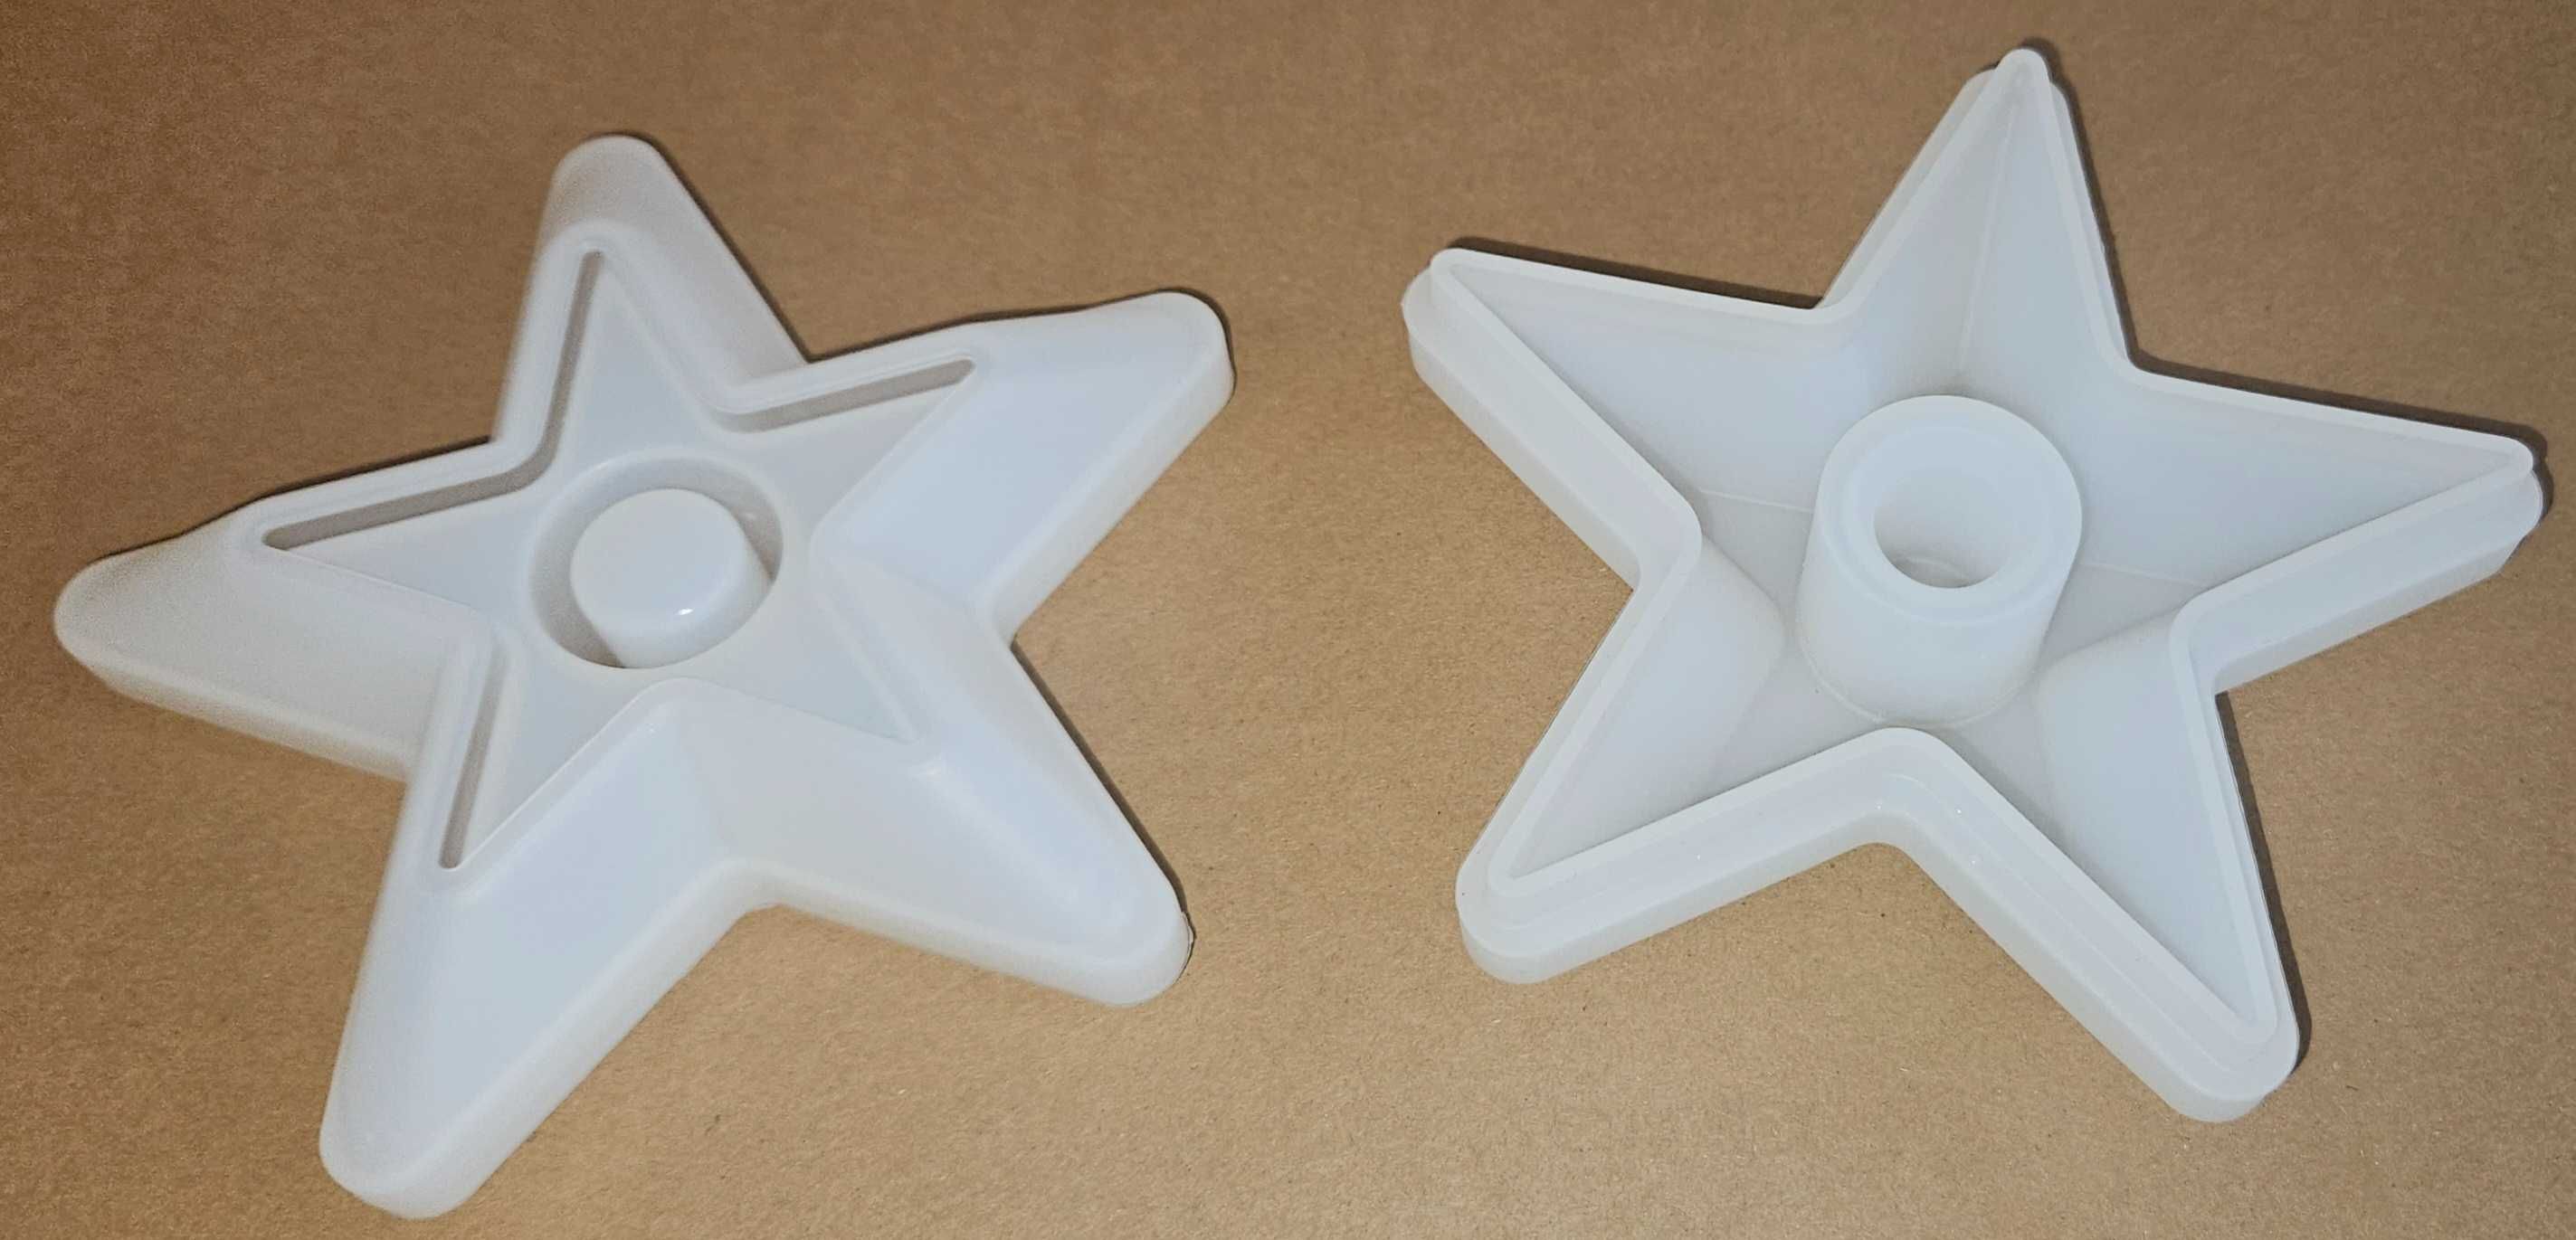 2 sztuki foremek do odlewania świec 3D w kształcie gwiazd